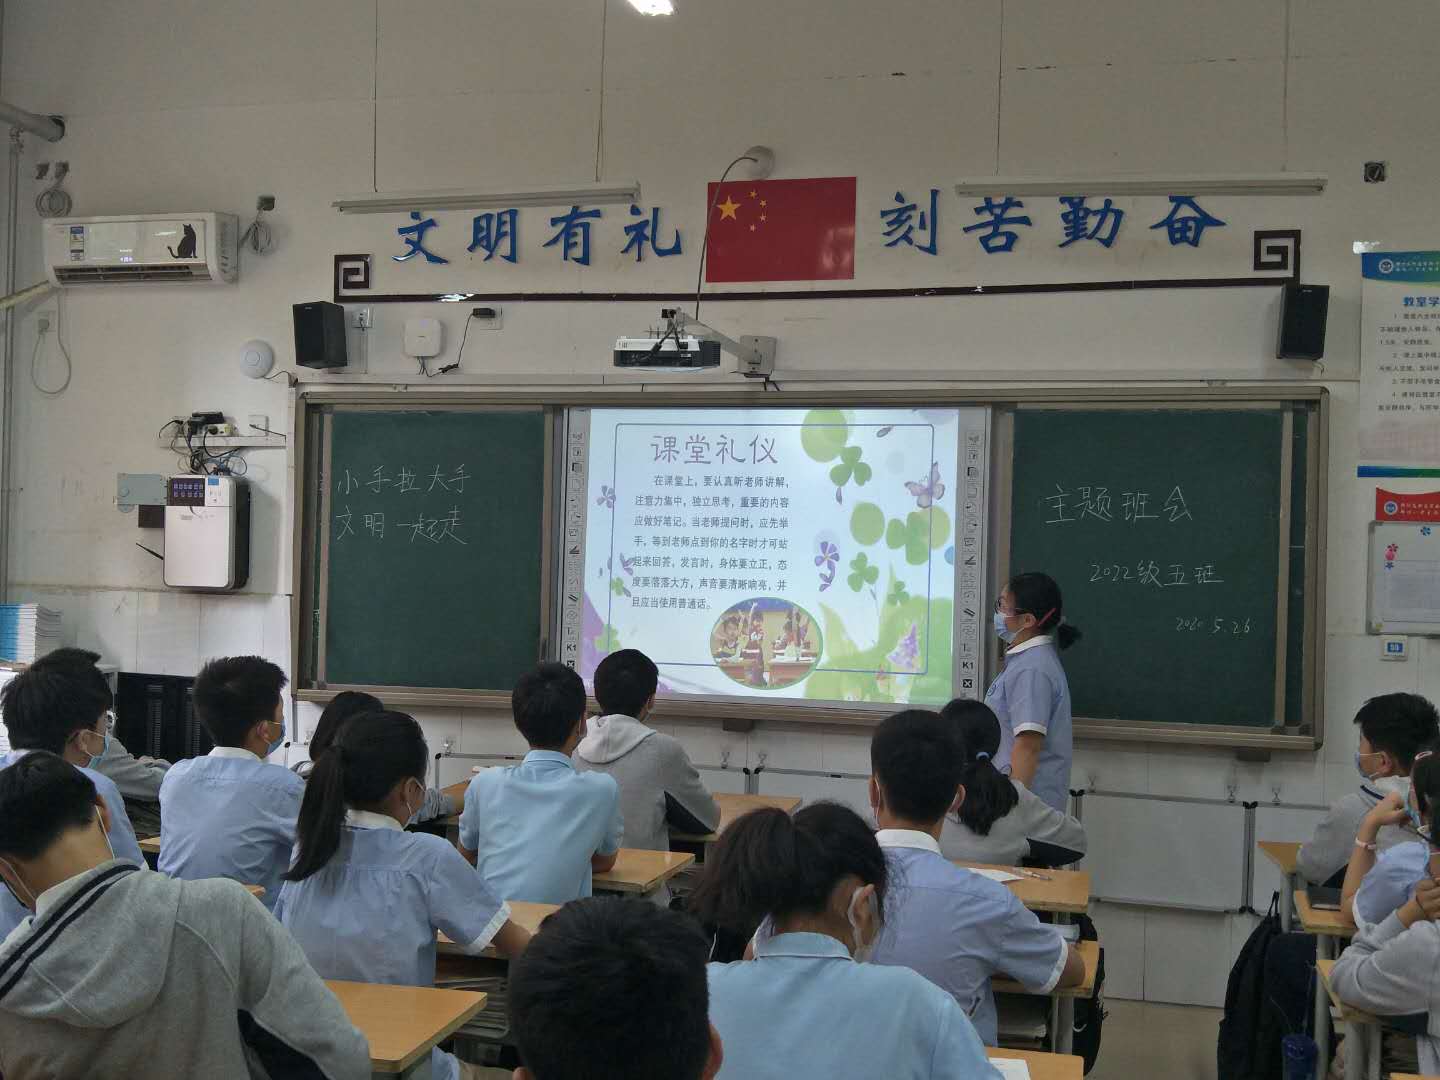 来自郑州高新区实验中学的文明倡议,请接收